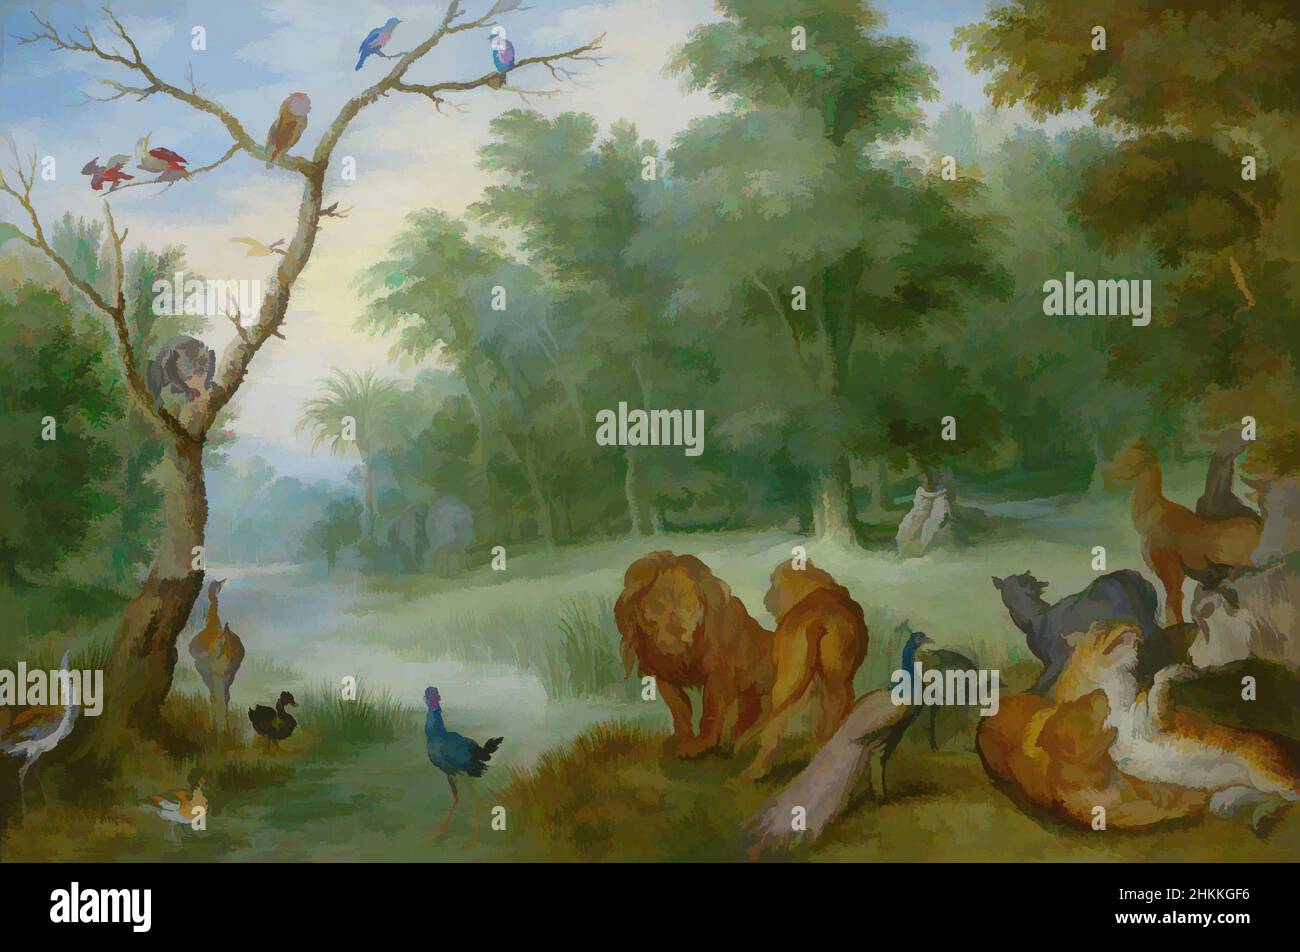 Kunst inspiriert vom Paradies mit dem Fall von Adam und Eva, Jan Brueghel de Jonge, mogelijk, c. 1630, Classic Works modernisiert von Artotop mit einem Schuss Moderne. Formen, Farbe und Wert, auffällige visuelle Wirkung auf Kunst. Emotionen durch Freiheit von Kunstwerken auf zeitgemäße Weise. Eine zeitlose Botschaft, die eine wild kreative neue Richtung verfolgt. Künstler, die sich dem digitalen Medium zuwenden und die Artotop NFT erschaffen Stockfoto